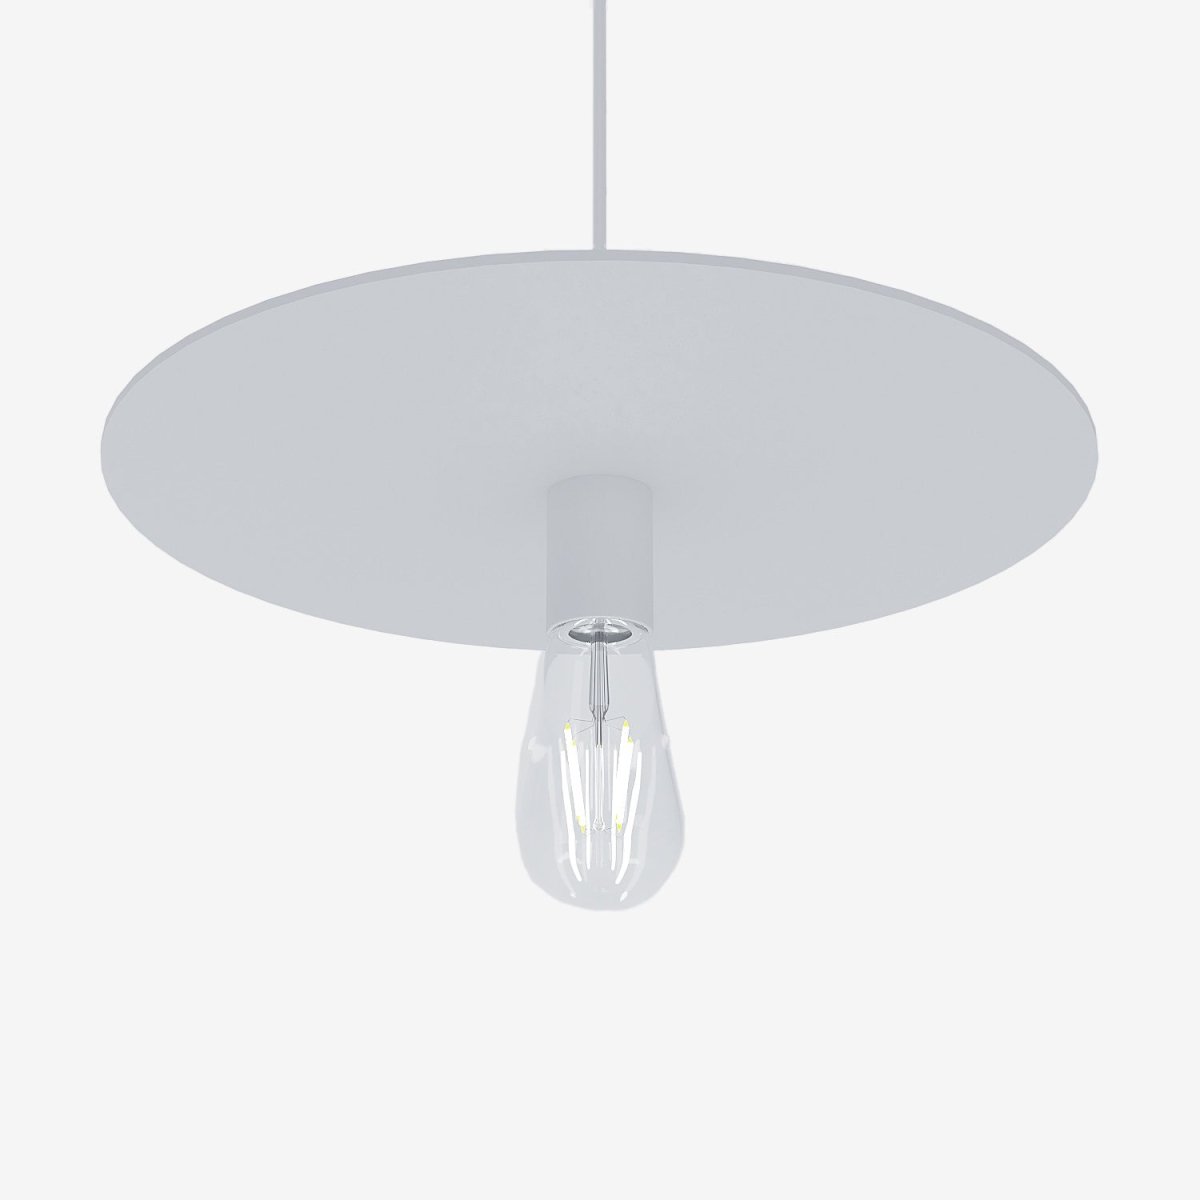 Lustre suspension cuisine forme de disque plat en métal blanc style minimaliste moderne - Potiron Paris, collection luminaire décoration intérieur